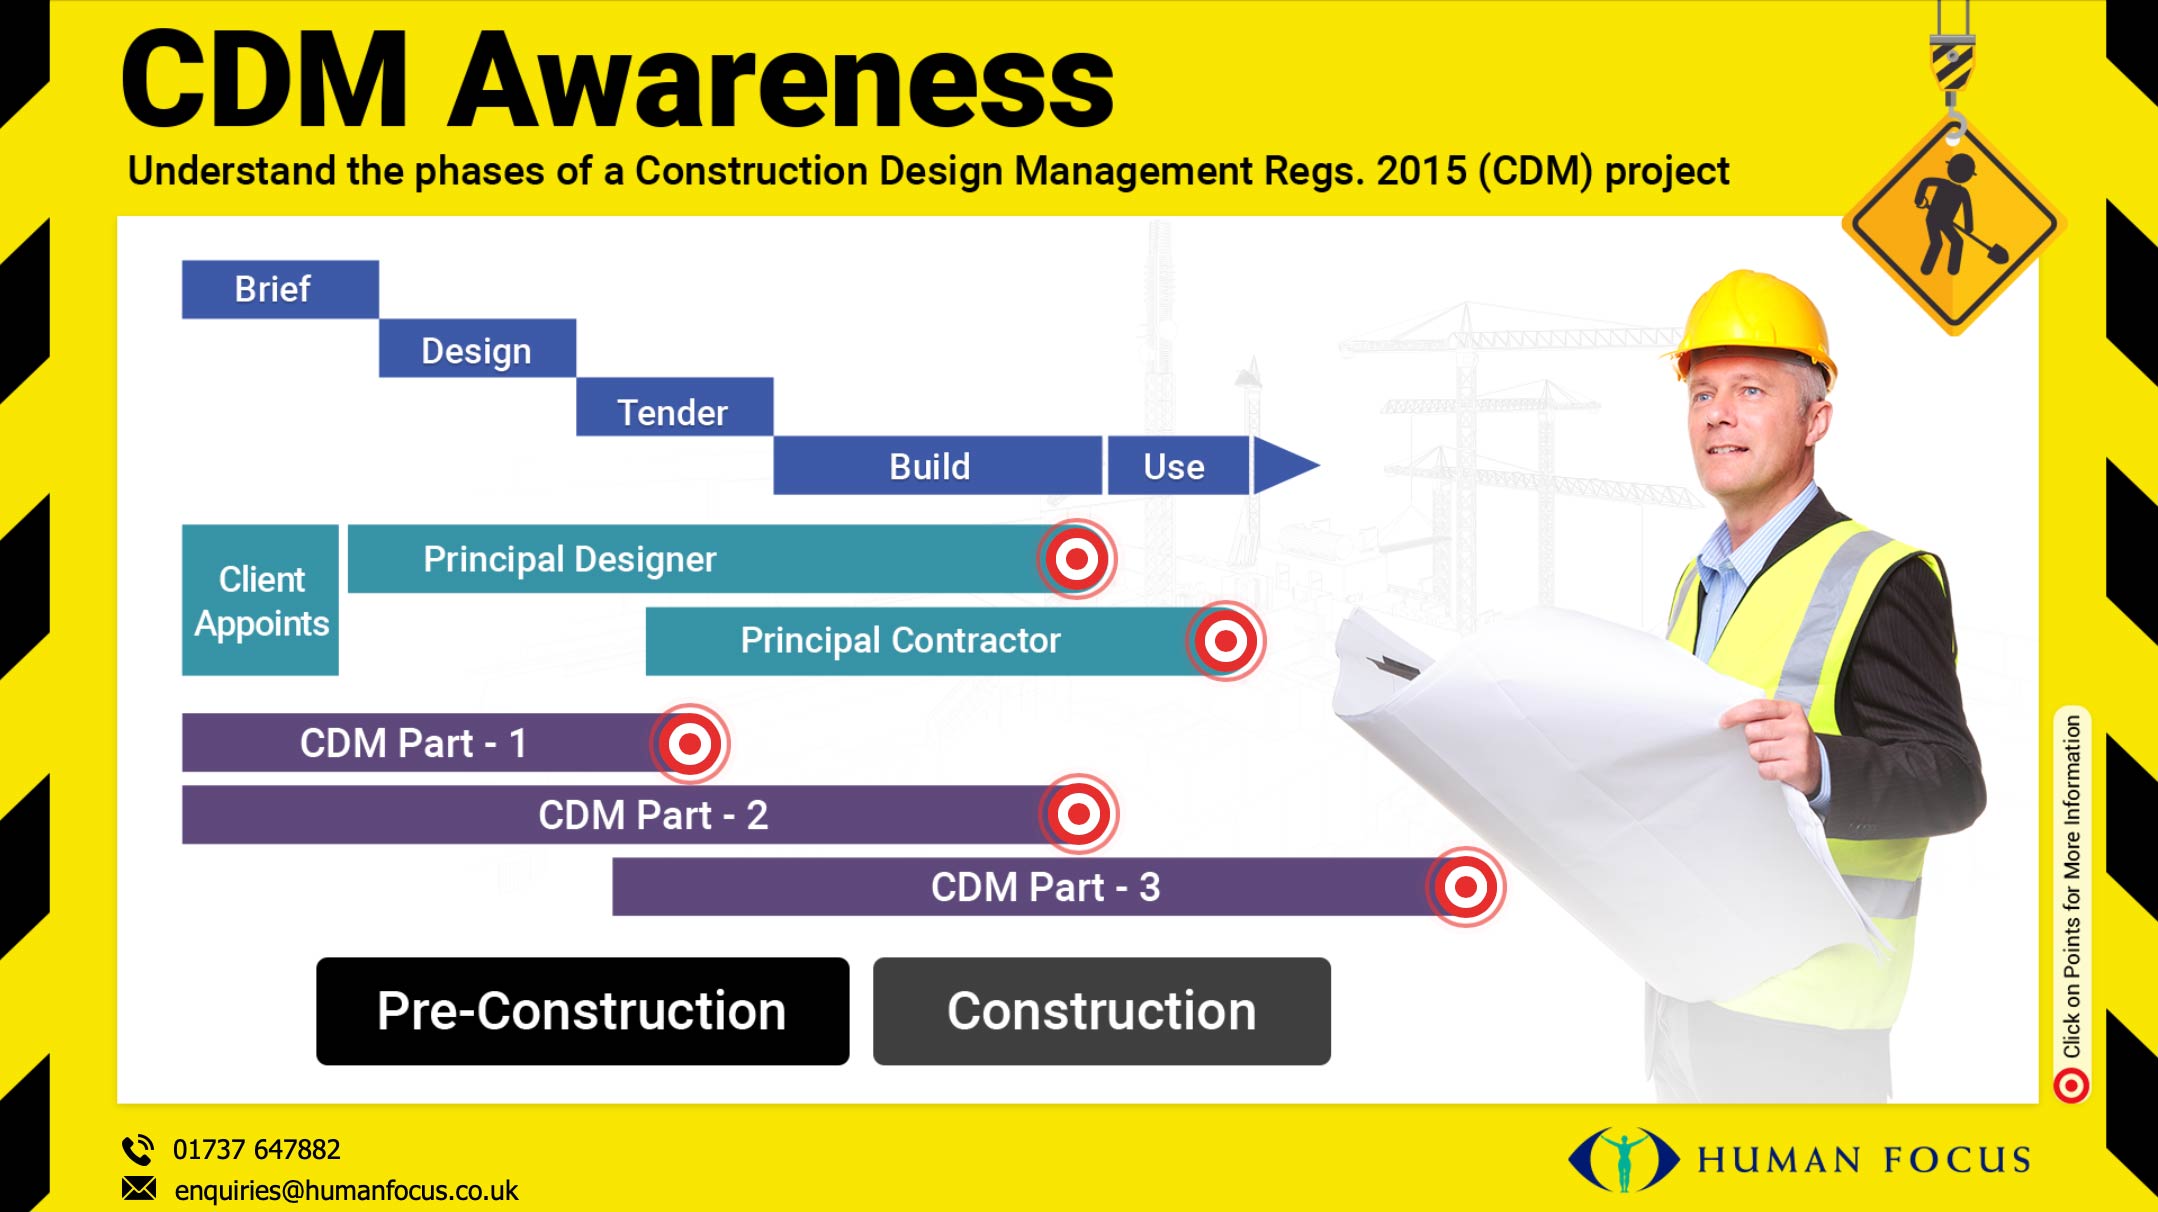 CDM Awareness Infographic